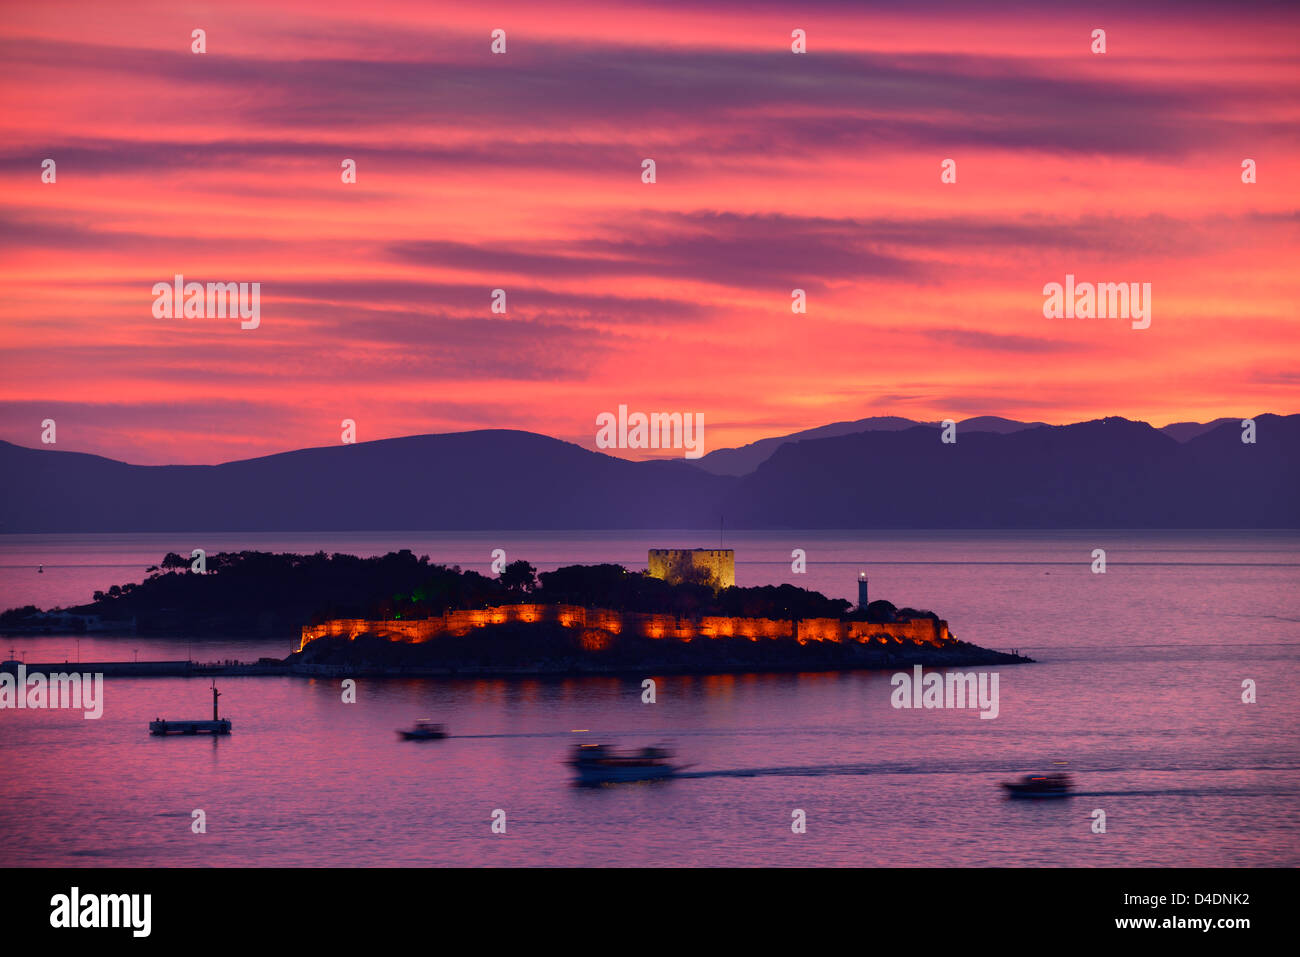 Roter Himmel Sonnenuntergang bei Kusadasi Türkei Hafen mit beleuchteten guvercin adasi Insel Burg auf die Ägäis mit Bergen von Samos, Griechenland Stockfoto